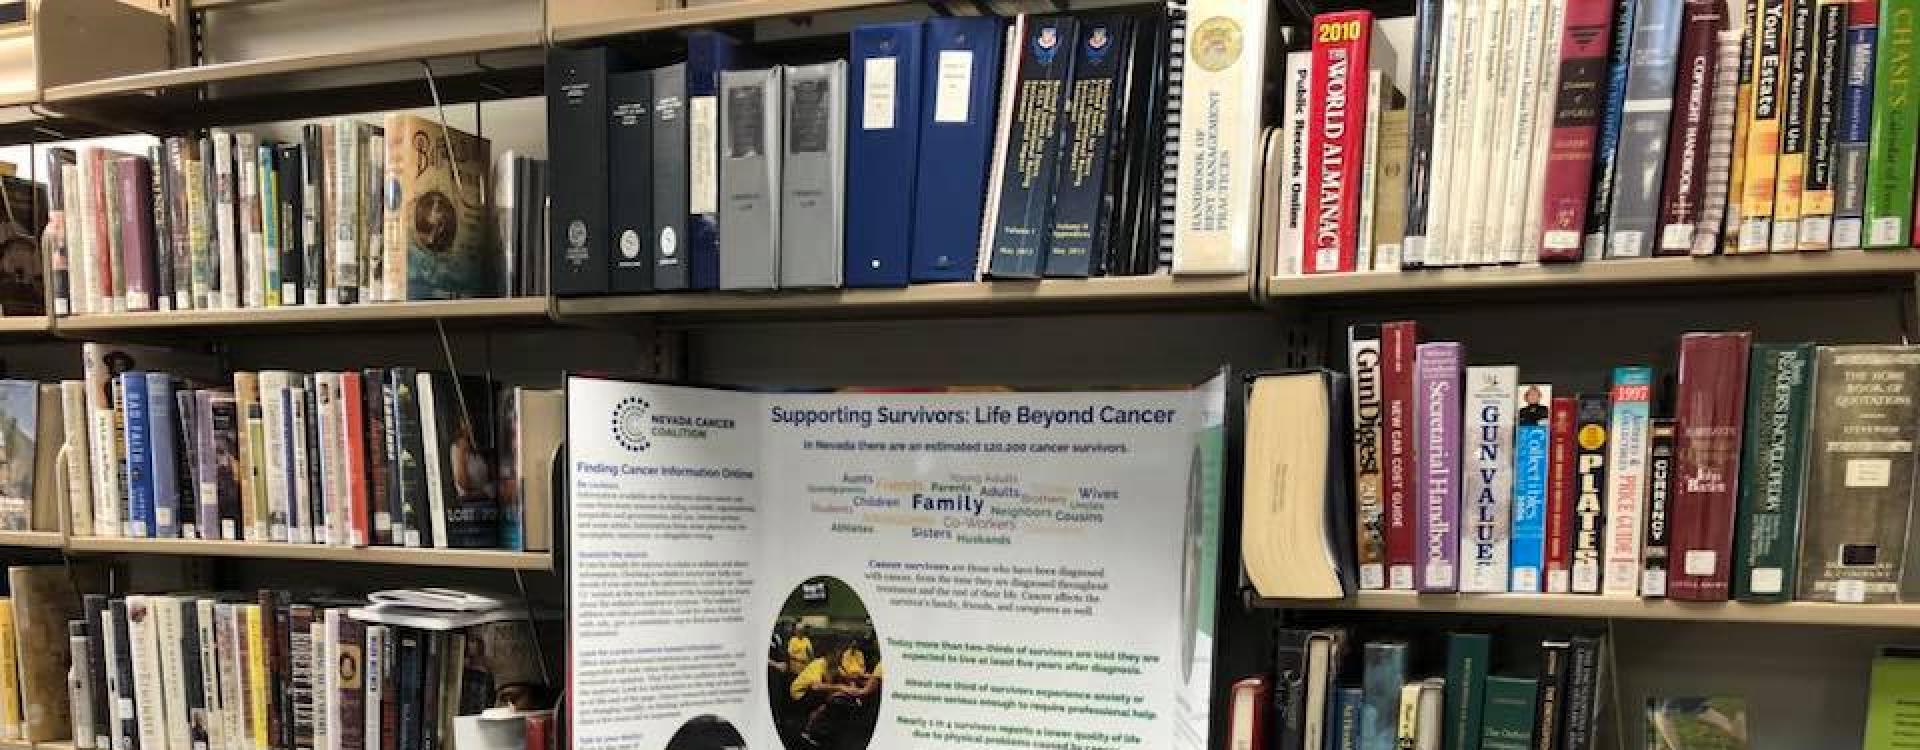 NCC Highlights Survivorship at Nevada Libraries